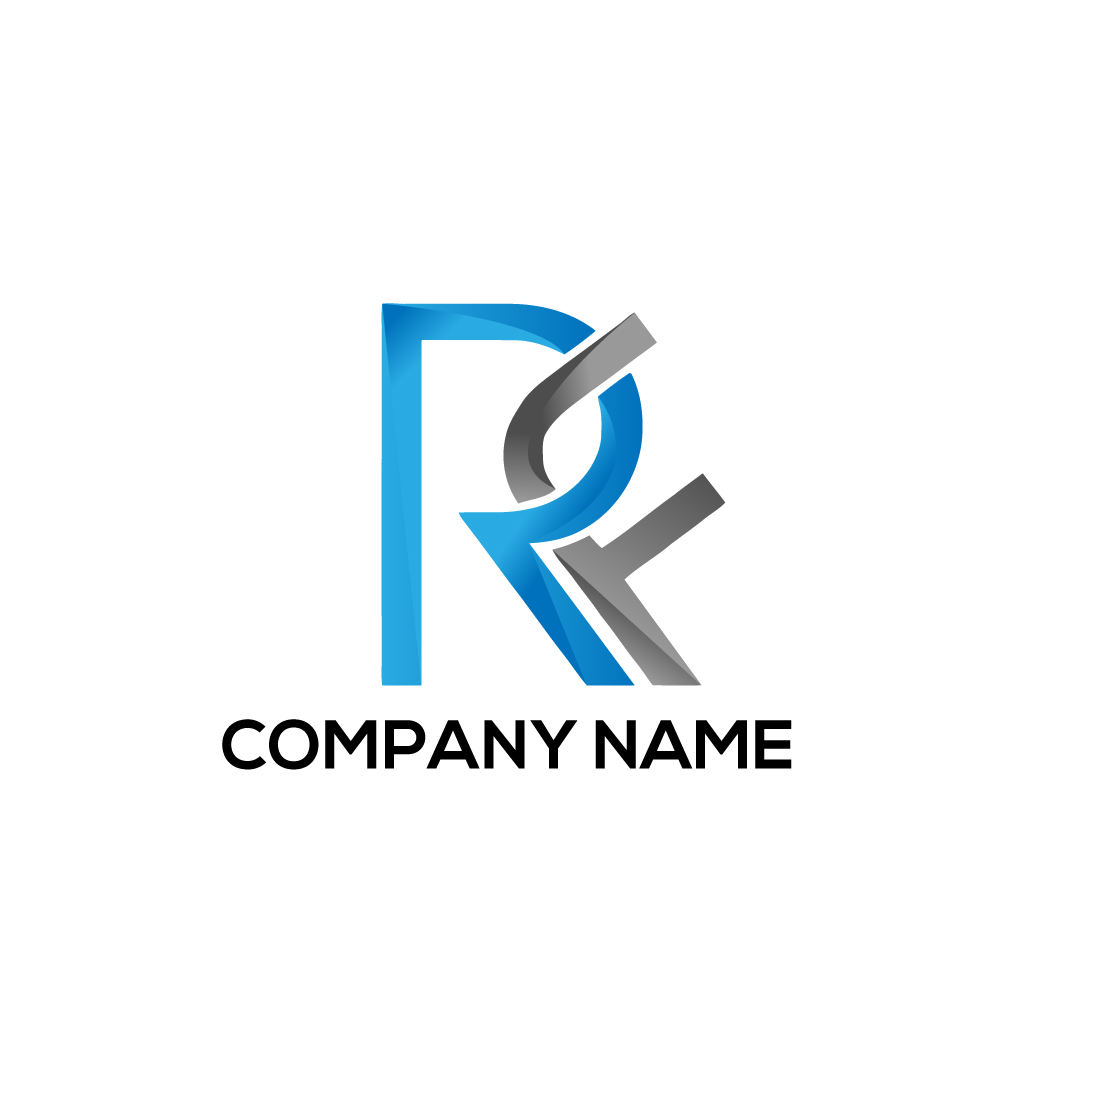 RF logo, RF Letter, RF design, RF icon, RF business cover image.